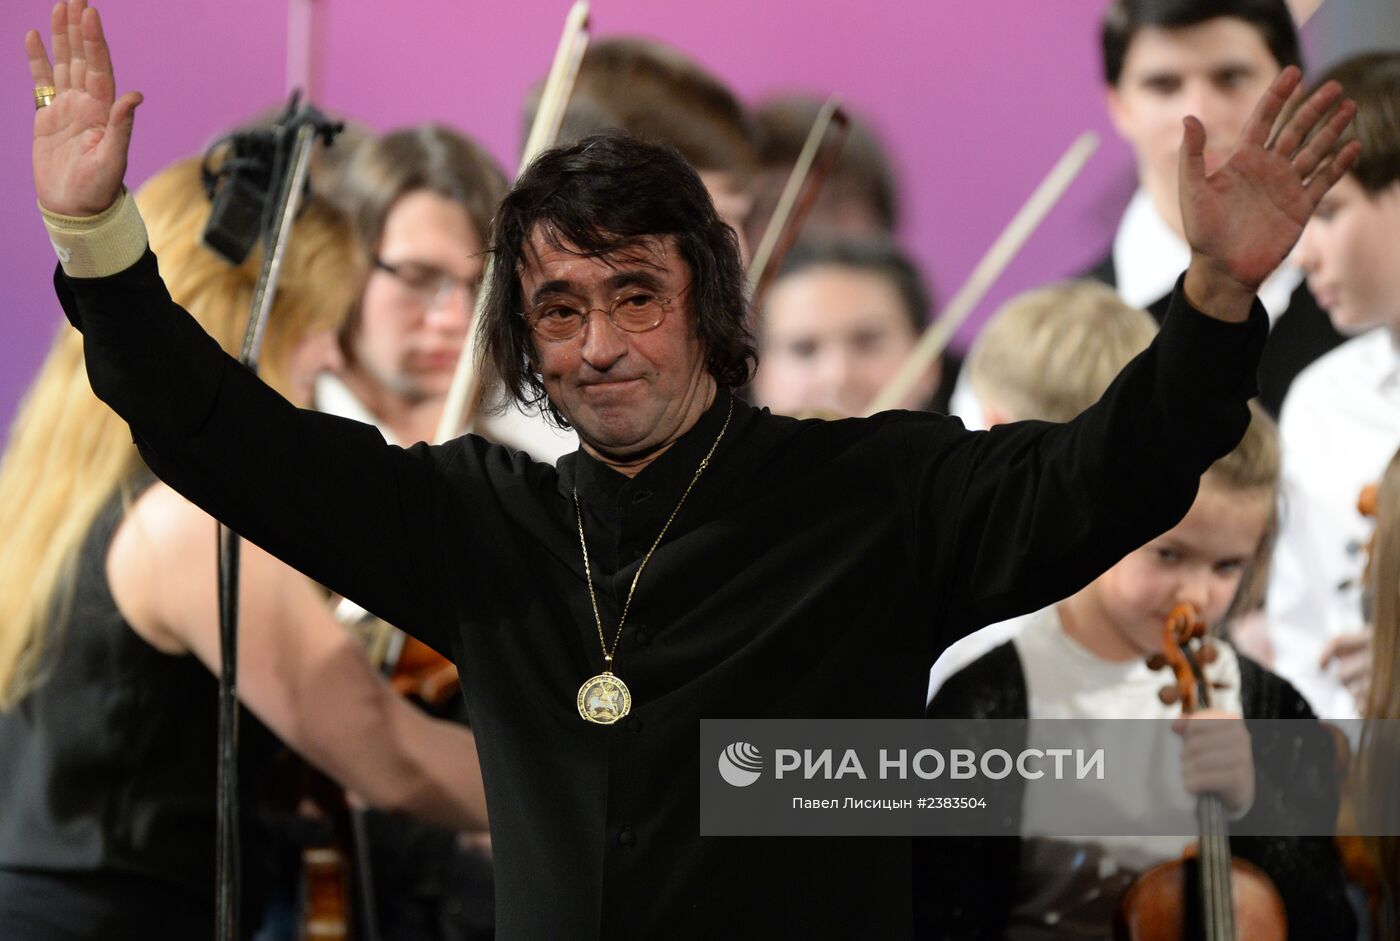 Гала-концерт закрытие VII Зимнего международного фестиваля искусств в Сочи